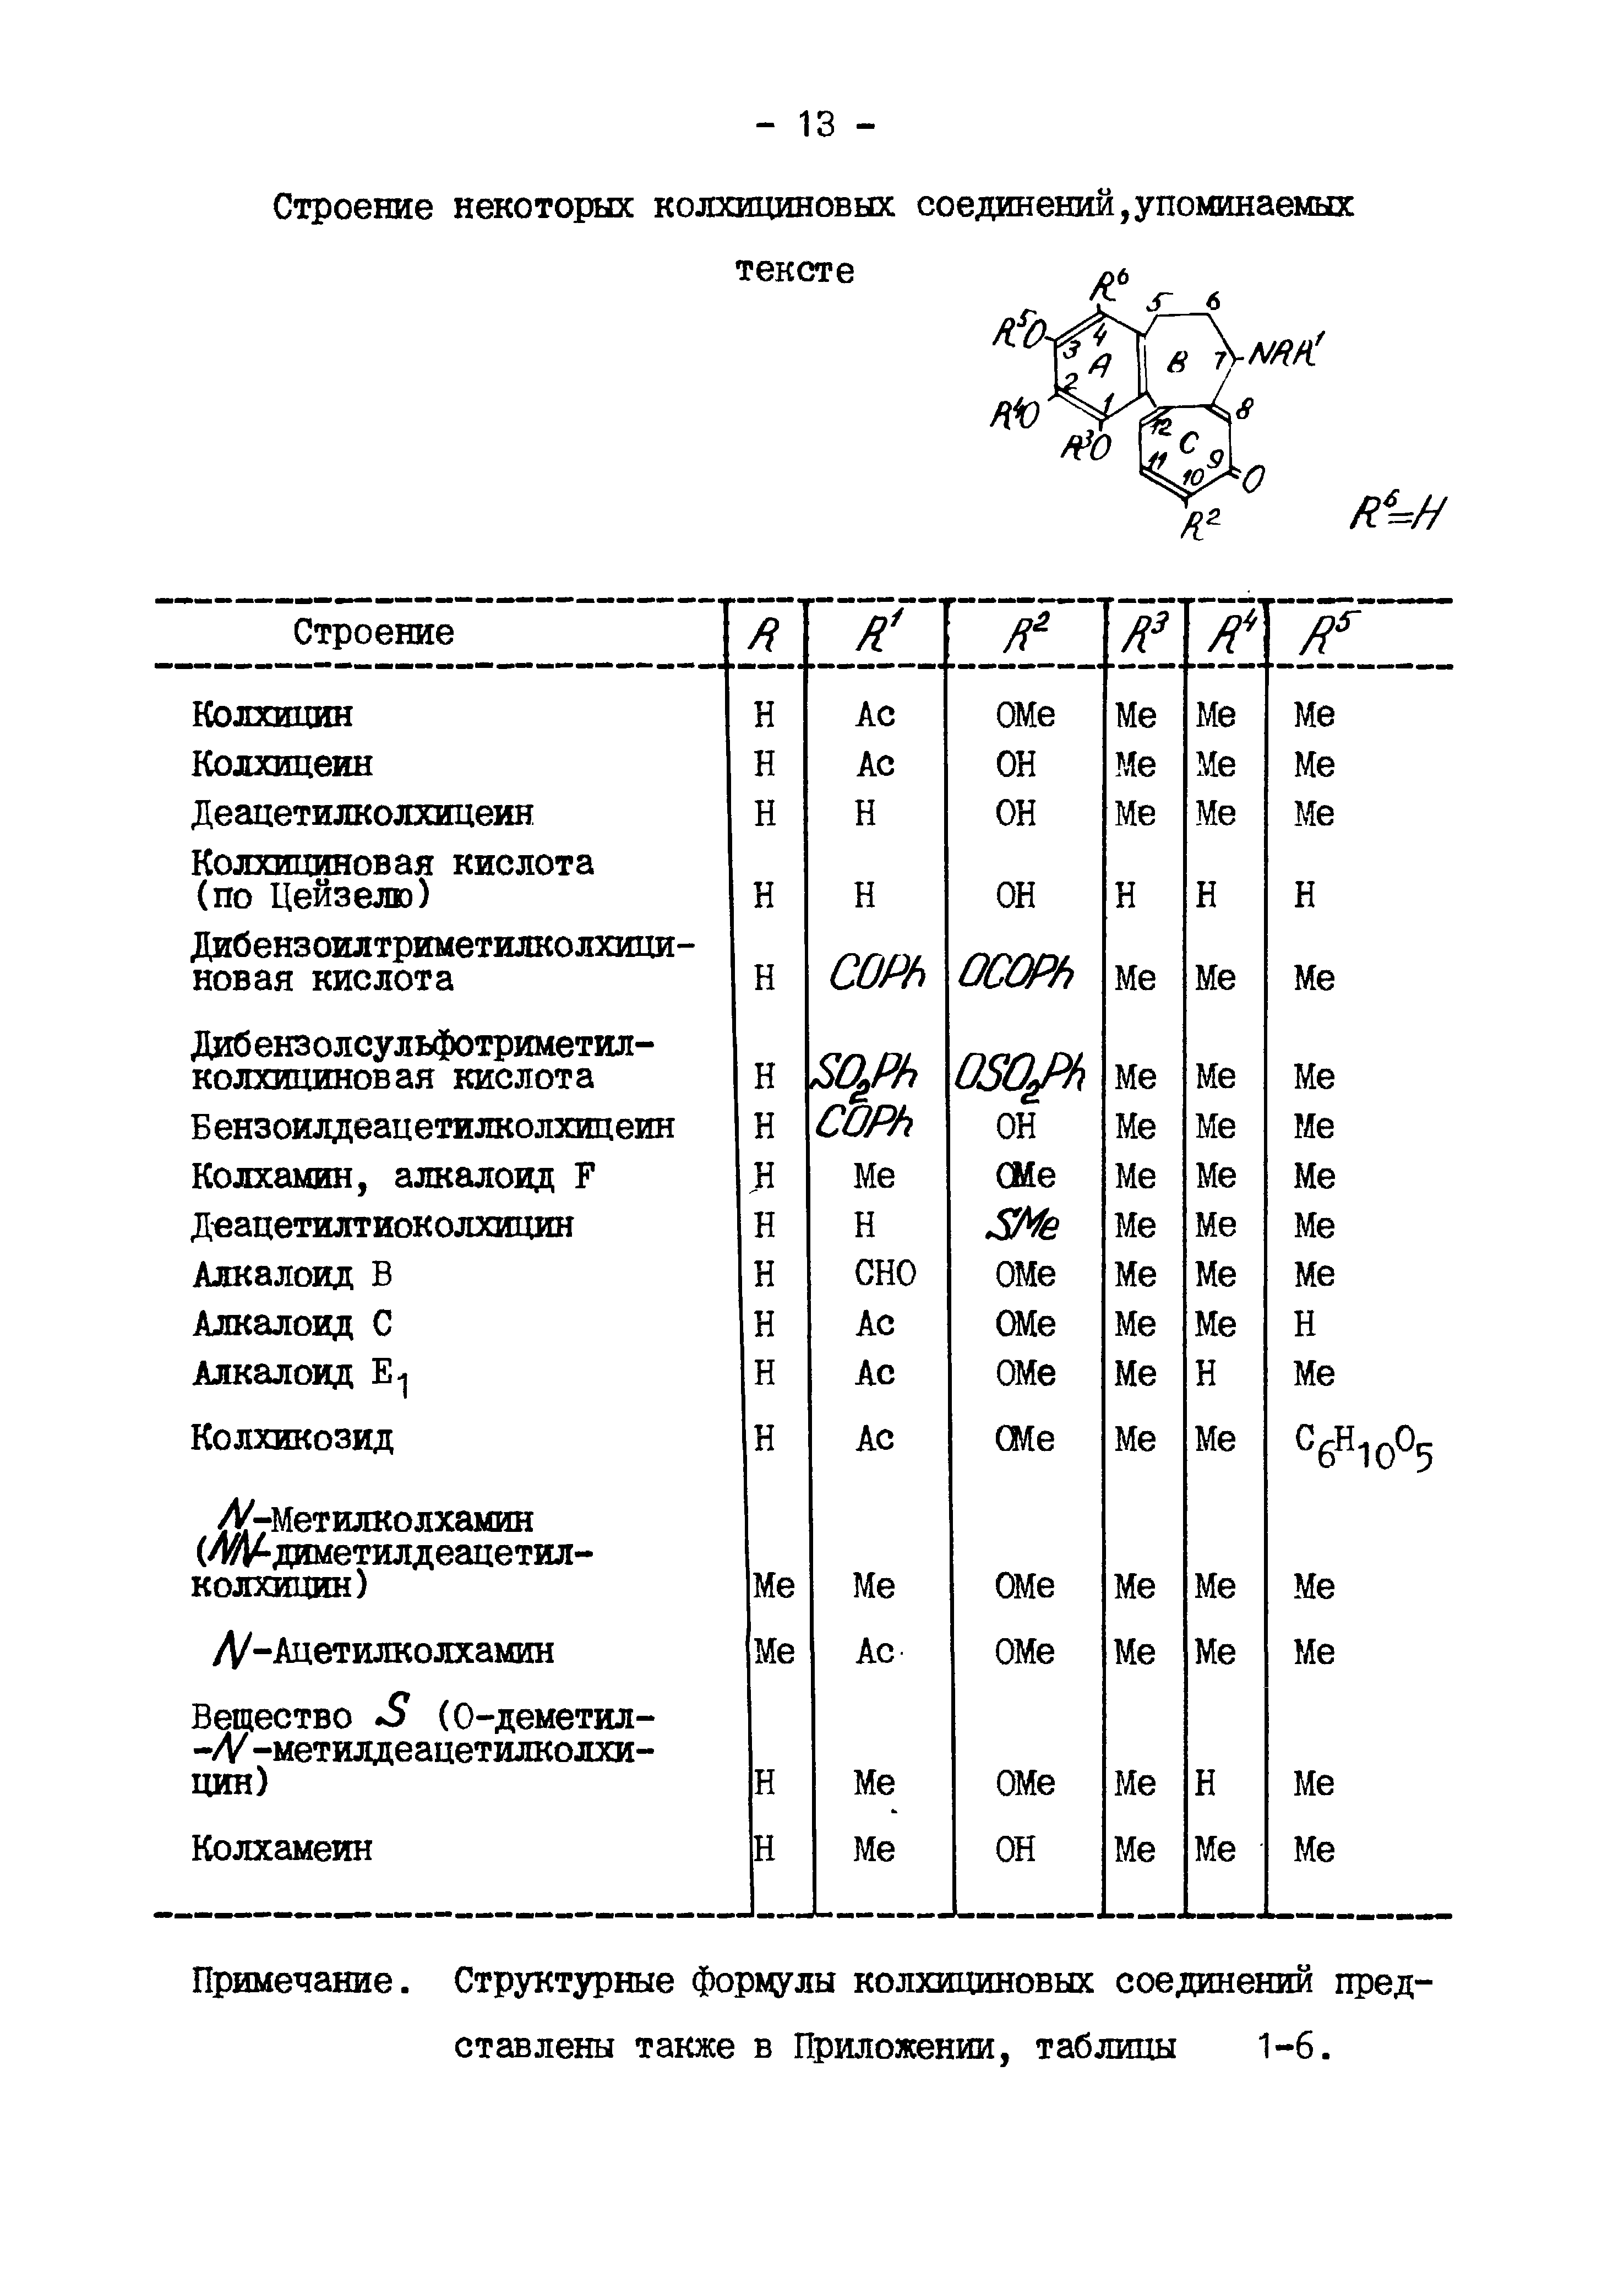 Примечание. Структурные формулы колхициновых соединений представлены также в Приложении, таблицы 1-6.